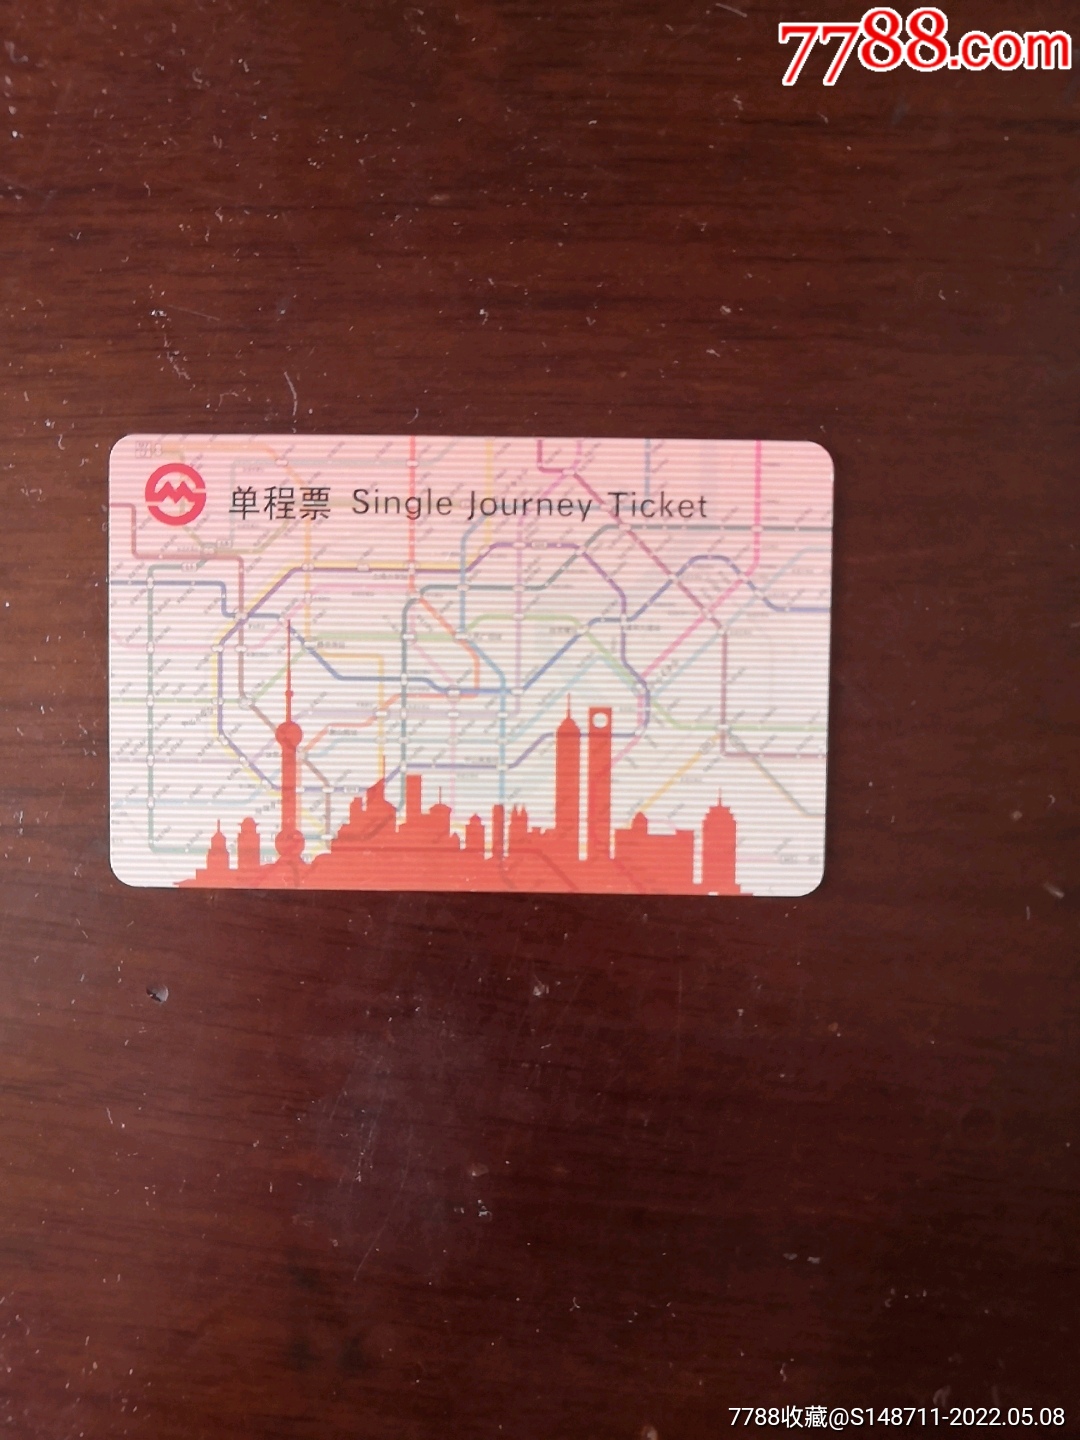 上海地铁售票机“上新”，可购买纸质二维码单程票、查询换乘信息！后续将优化设备高度、字体等 - 周到